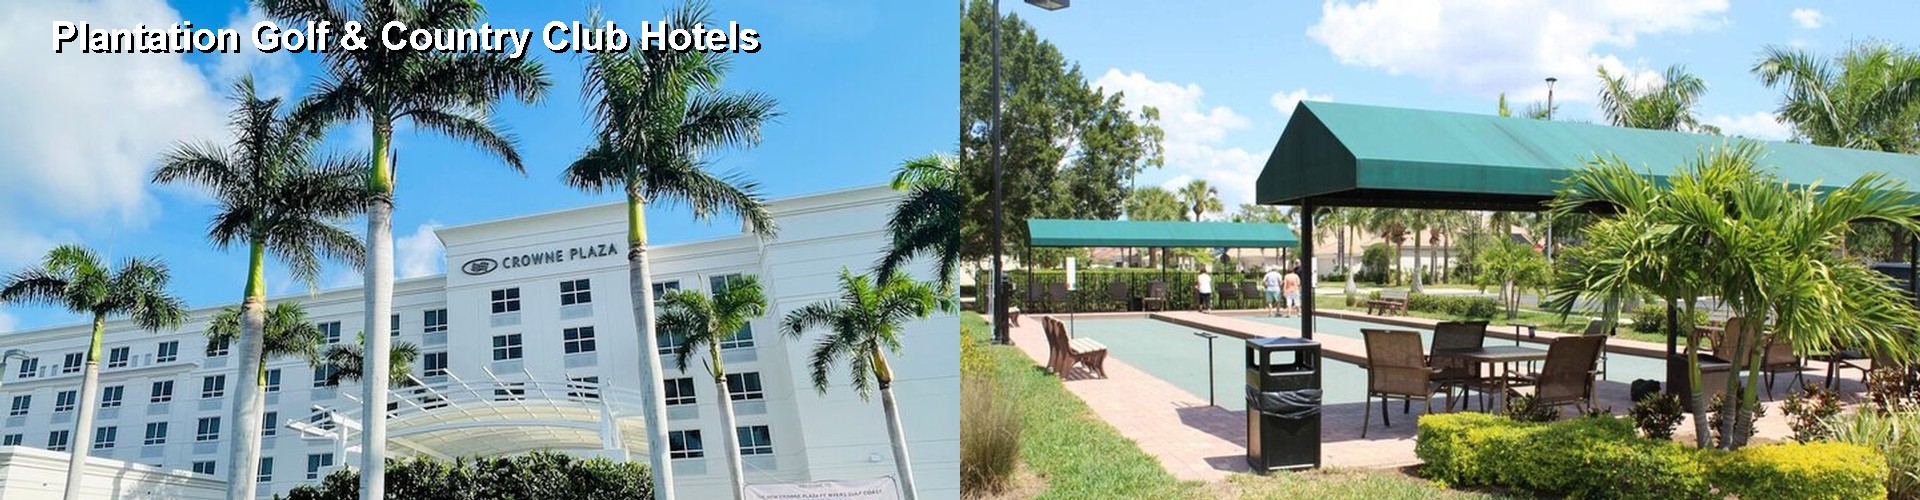 5 Best Hotels near Plantation Golf & Country Club